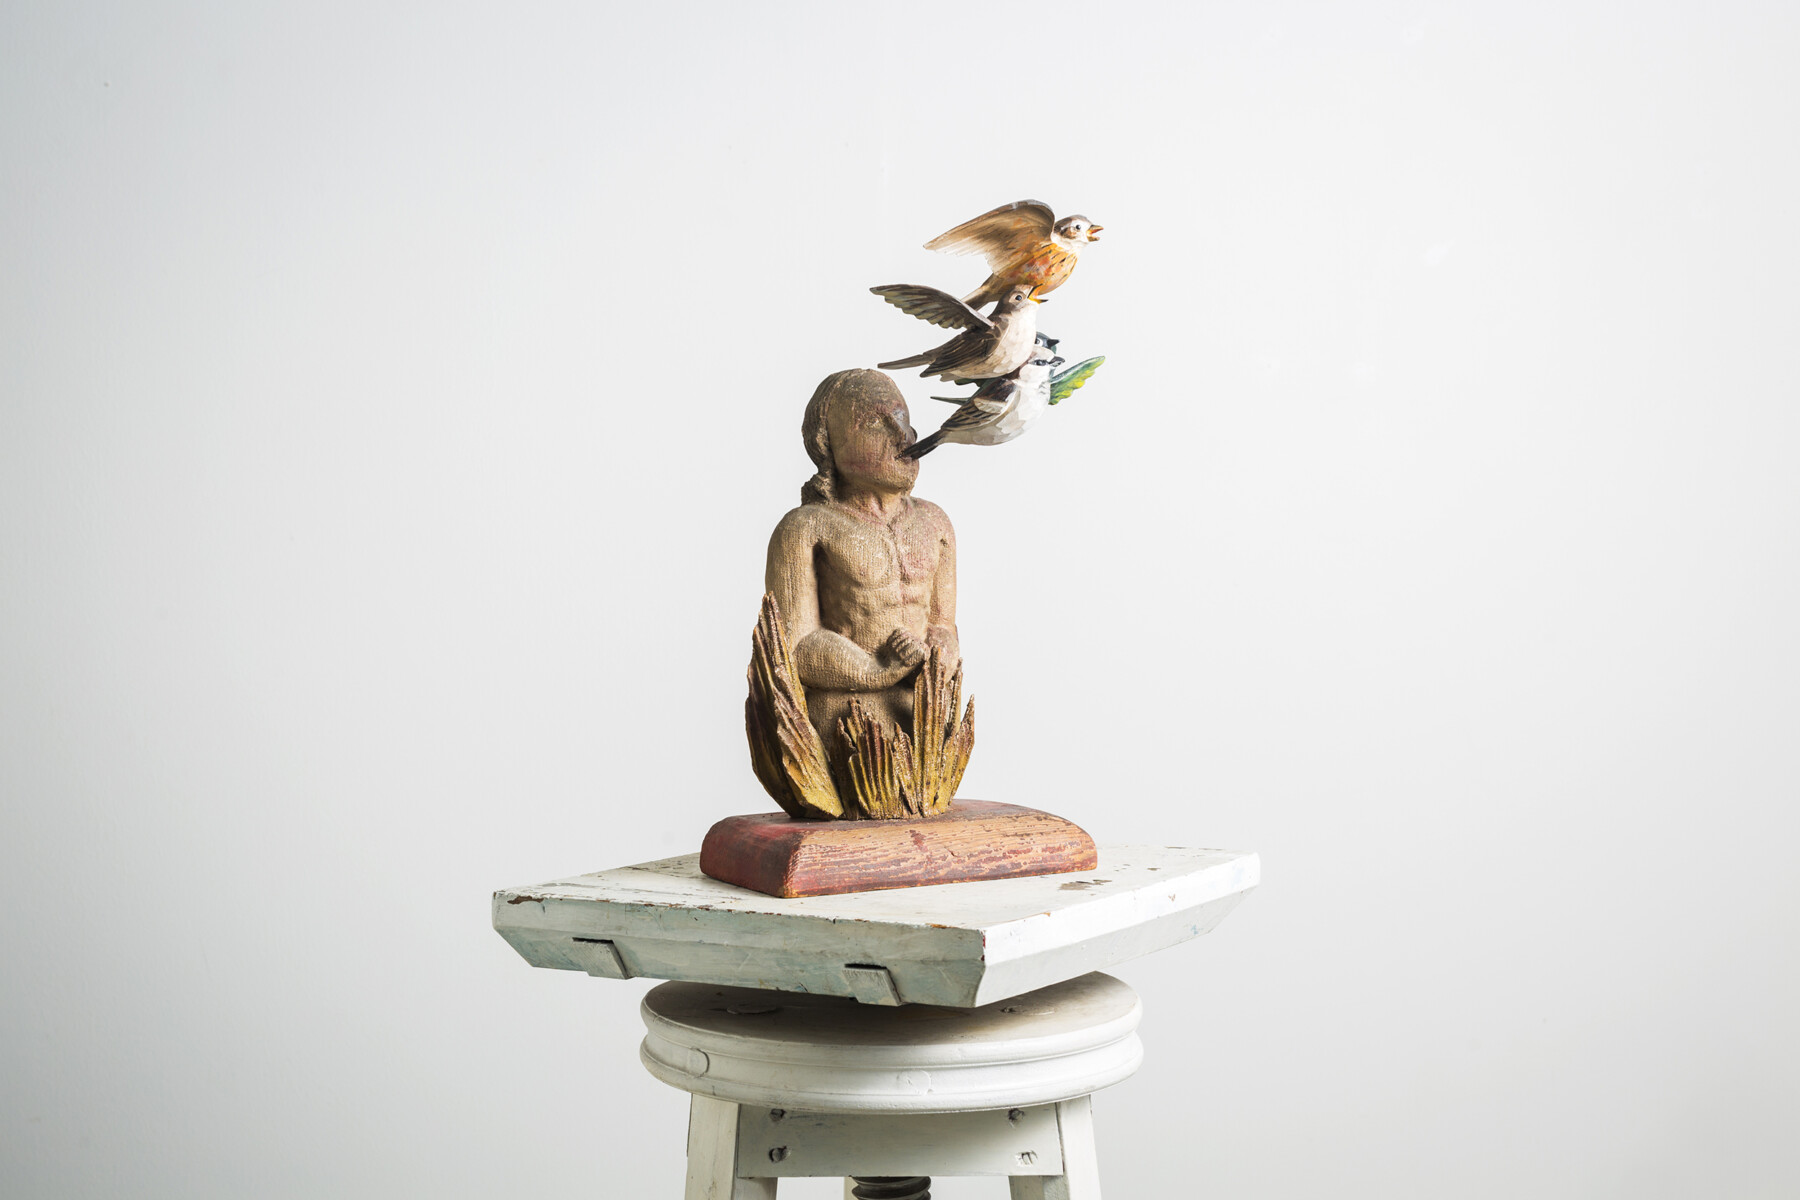 Sobre un pedestal, la escultura de una persona con varios pájaros de colores volando alrededor de su cabeza, o posiblemente saliendo de ella.